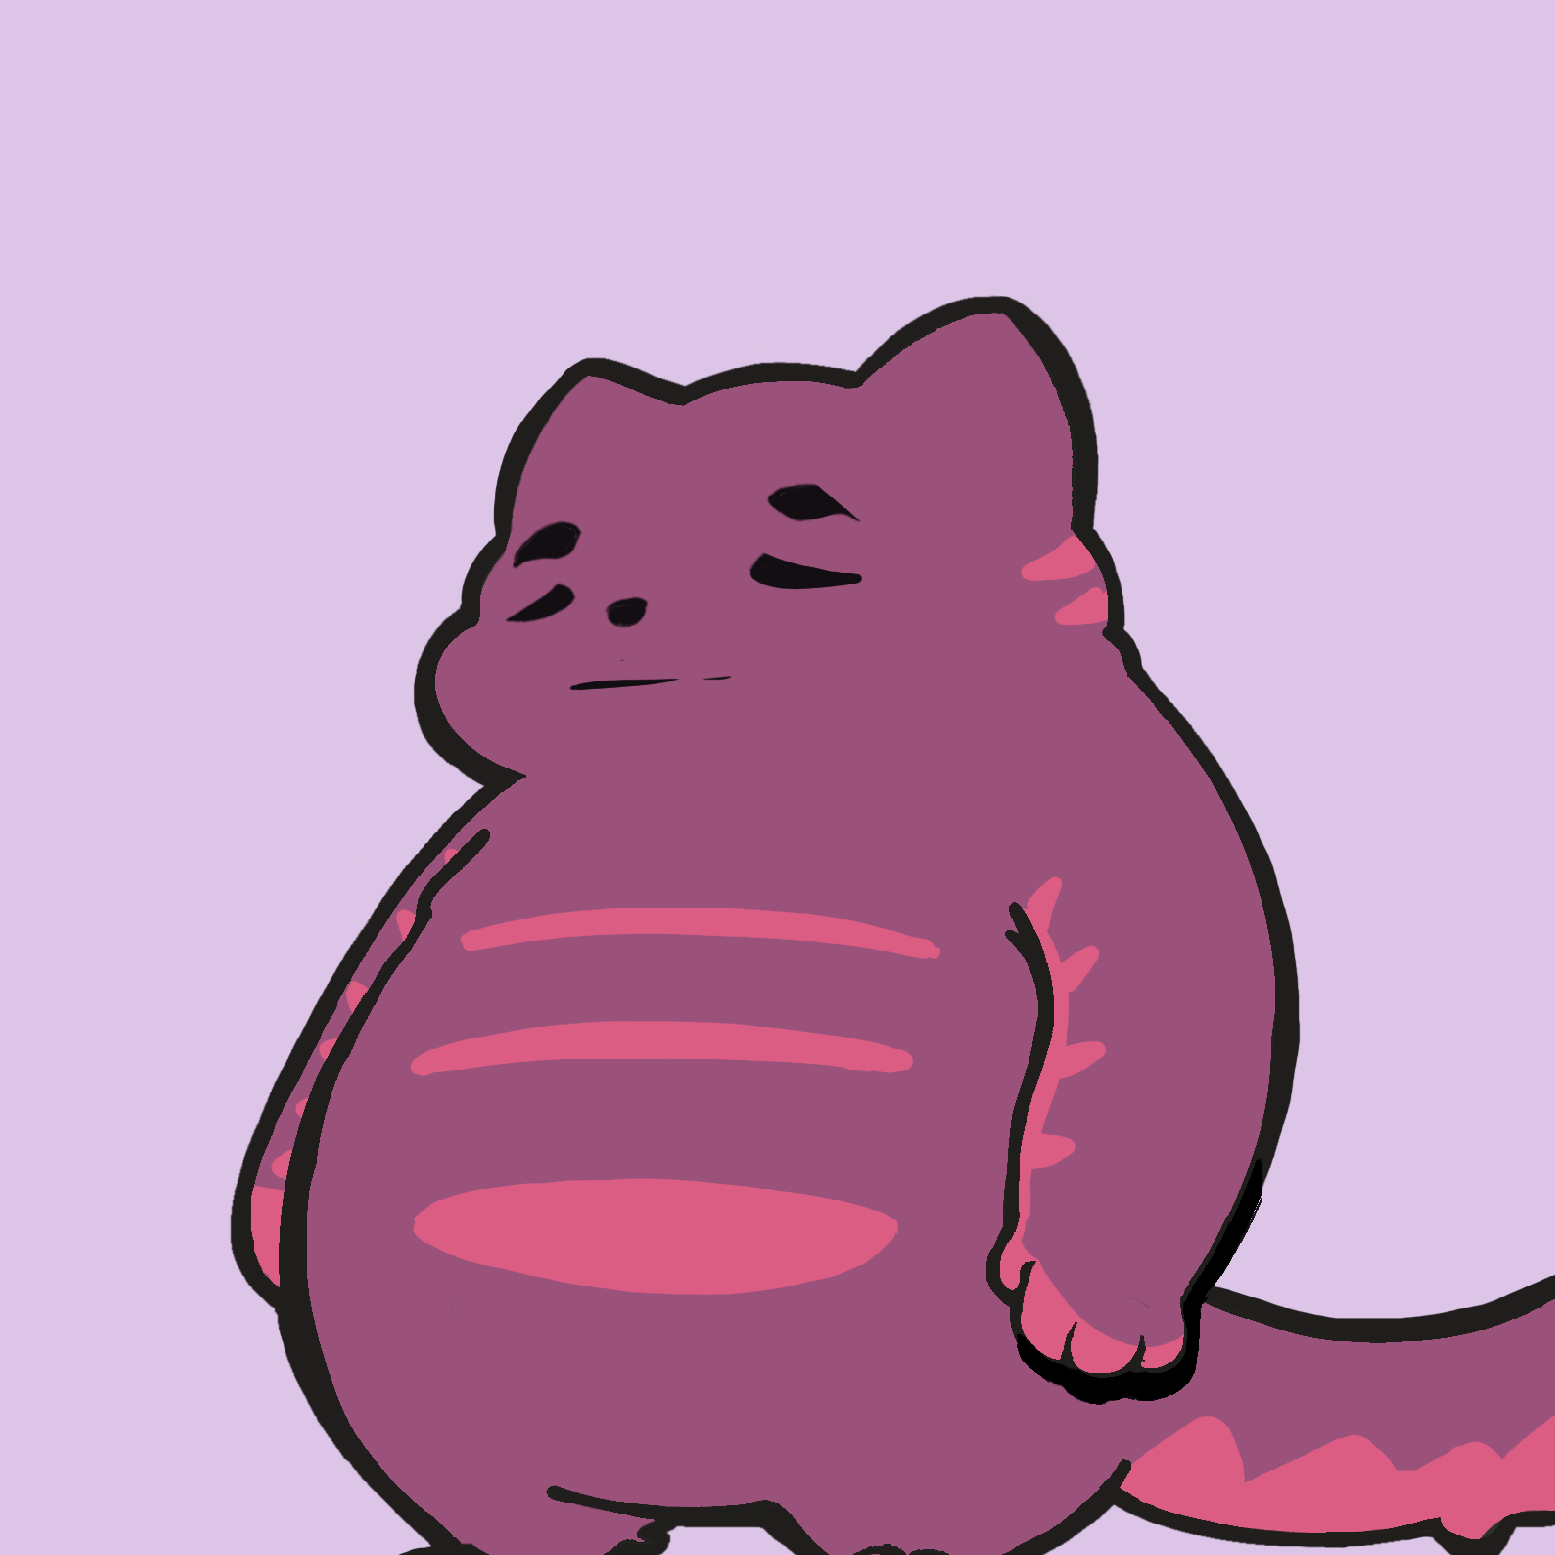 Degen Fat Cat the 15593rd